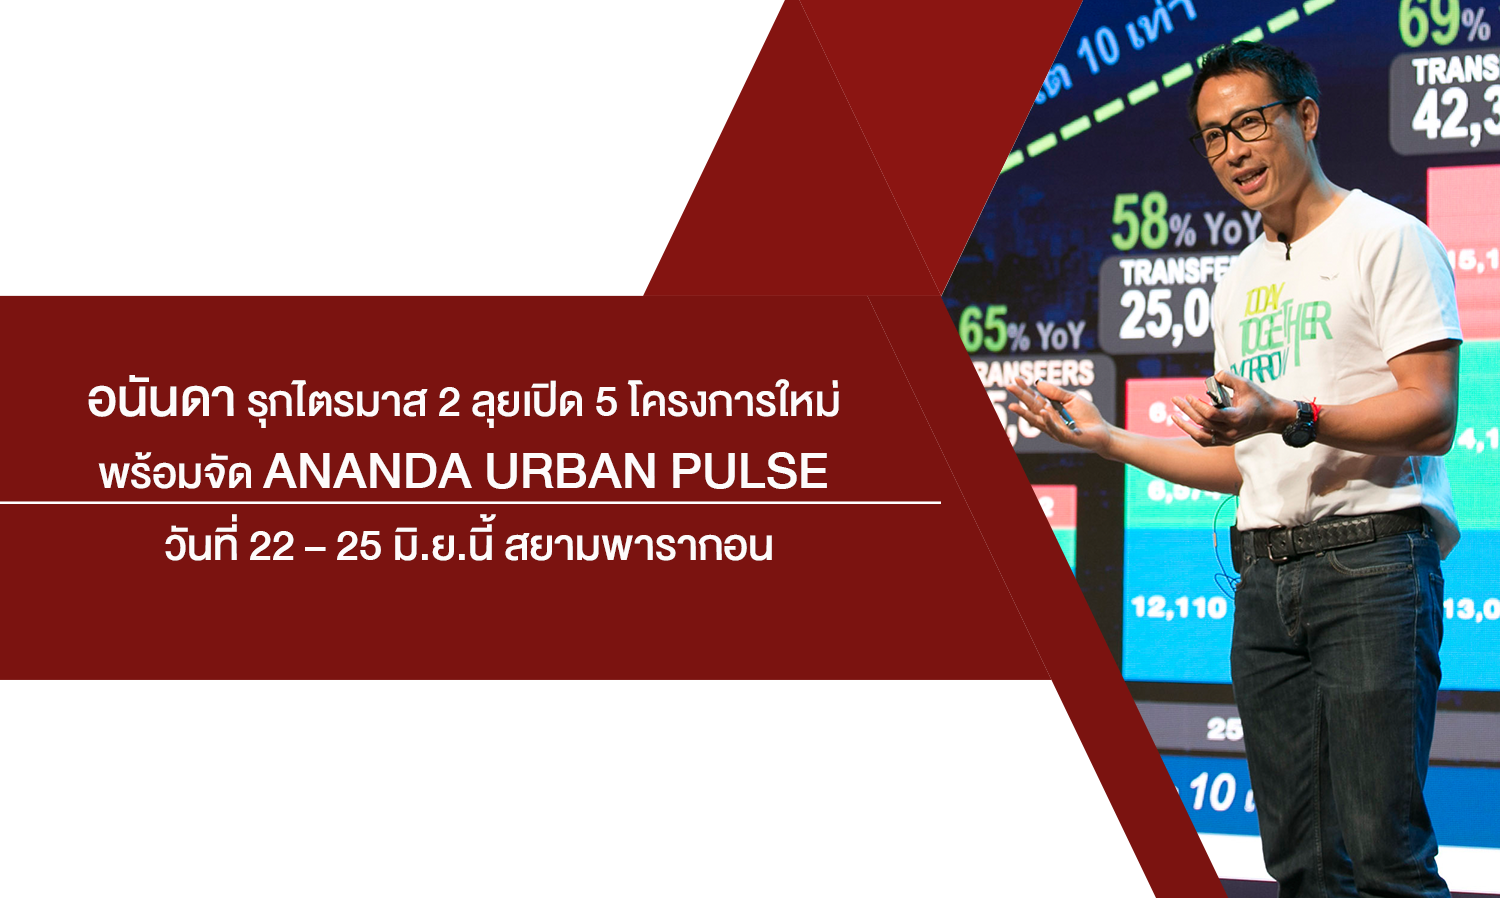 อนันดา รุกไตรมาส 2 จับมือมิตซุย ลุยเปิด 5 โครงการใหม่ พร้อมจัดอีเว้นท์ใหญ่แห่งปี Ananda Urban Pulse วันที่ 22 – 25 มิ.ย.นี้ สยามพารากอน